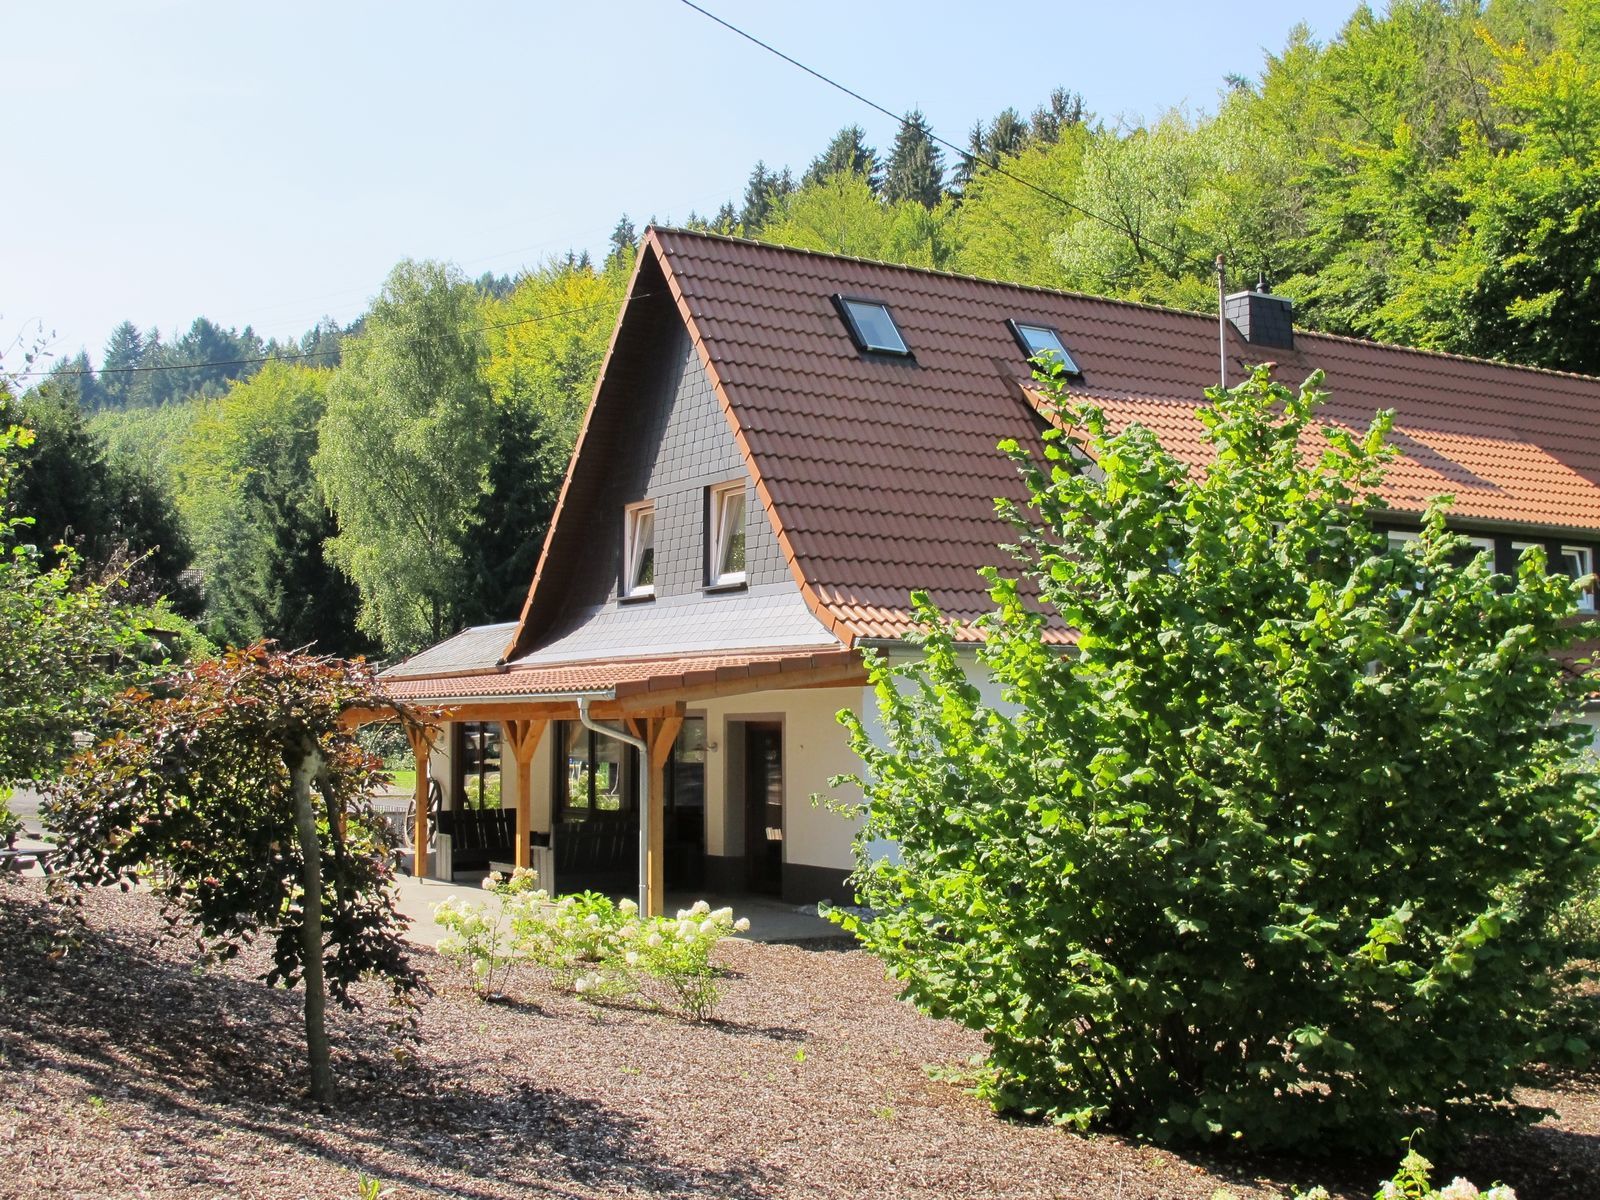 Huize Schutzbach Westerwald - vakantievilla voor groepen in de natuur